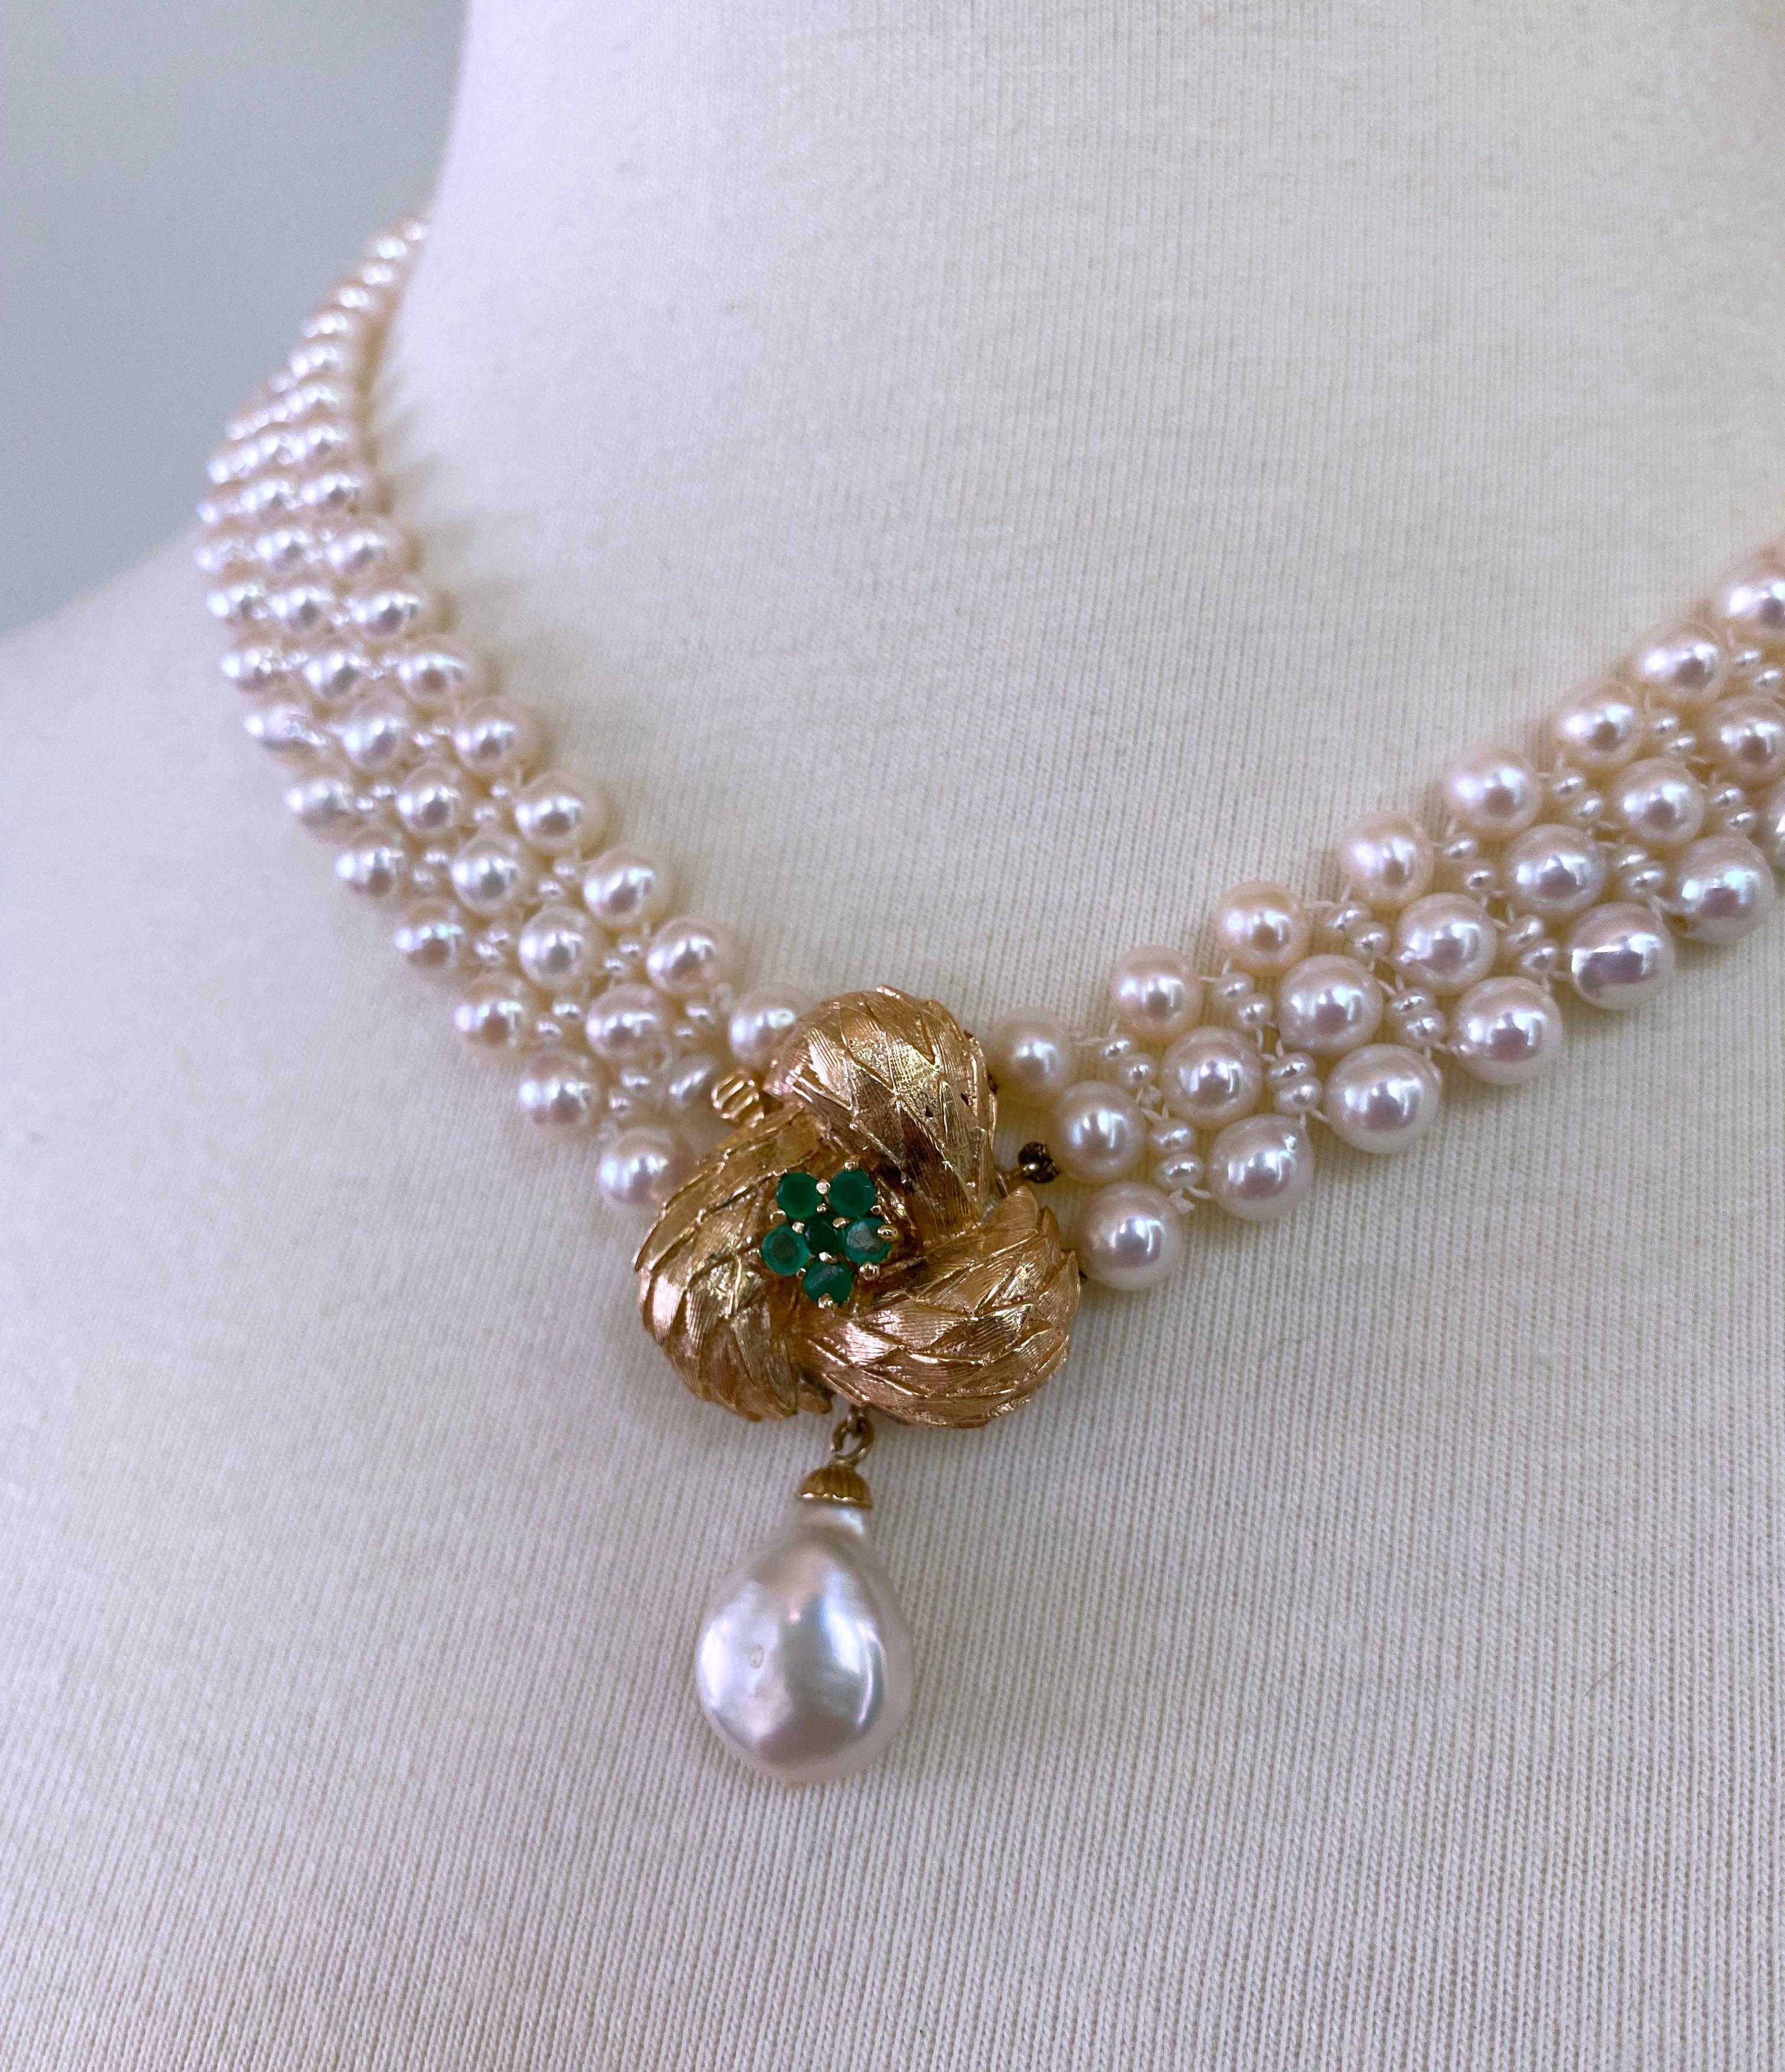 Diese handgeflochtene weiße Perlenkette mit Smaragd und floralem Mittelstück aus 14-karätigem Gelbgold ist schön und praktisch, da das Mittelstück als Verschluss auf der Vorderseite dient. Das Herzstück besteht aus 14-karätigem Gelbgold mit einem